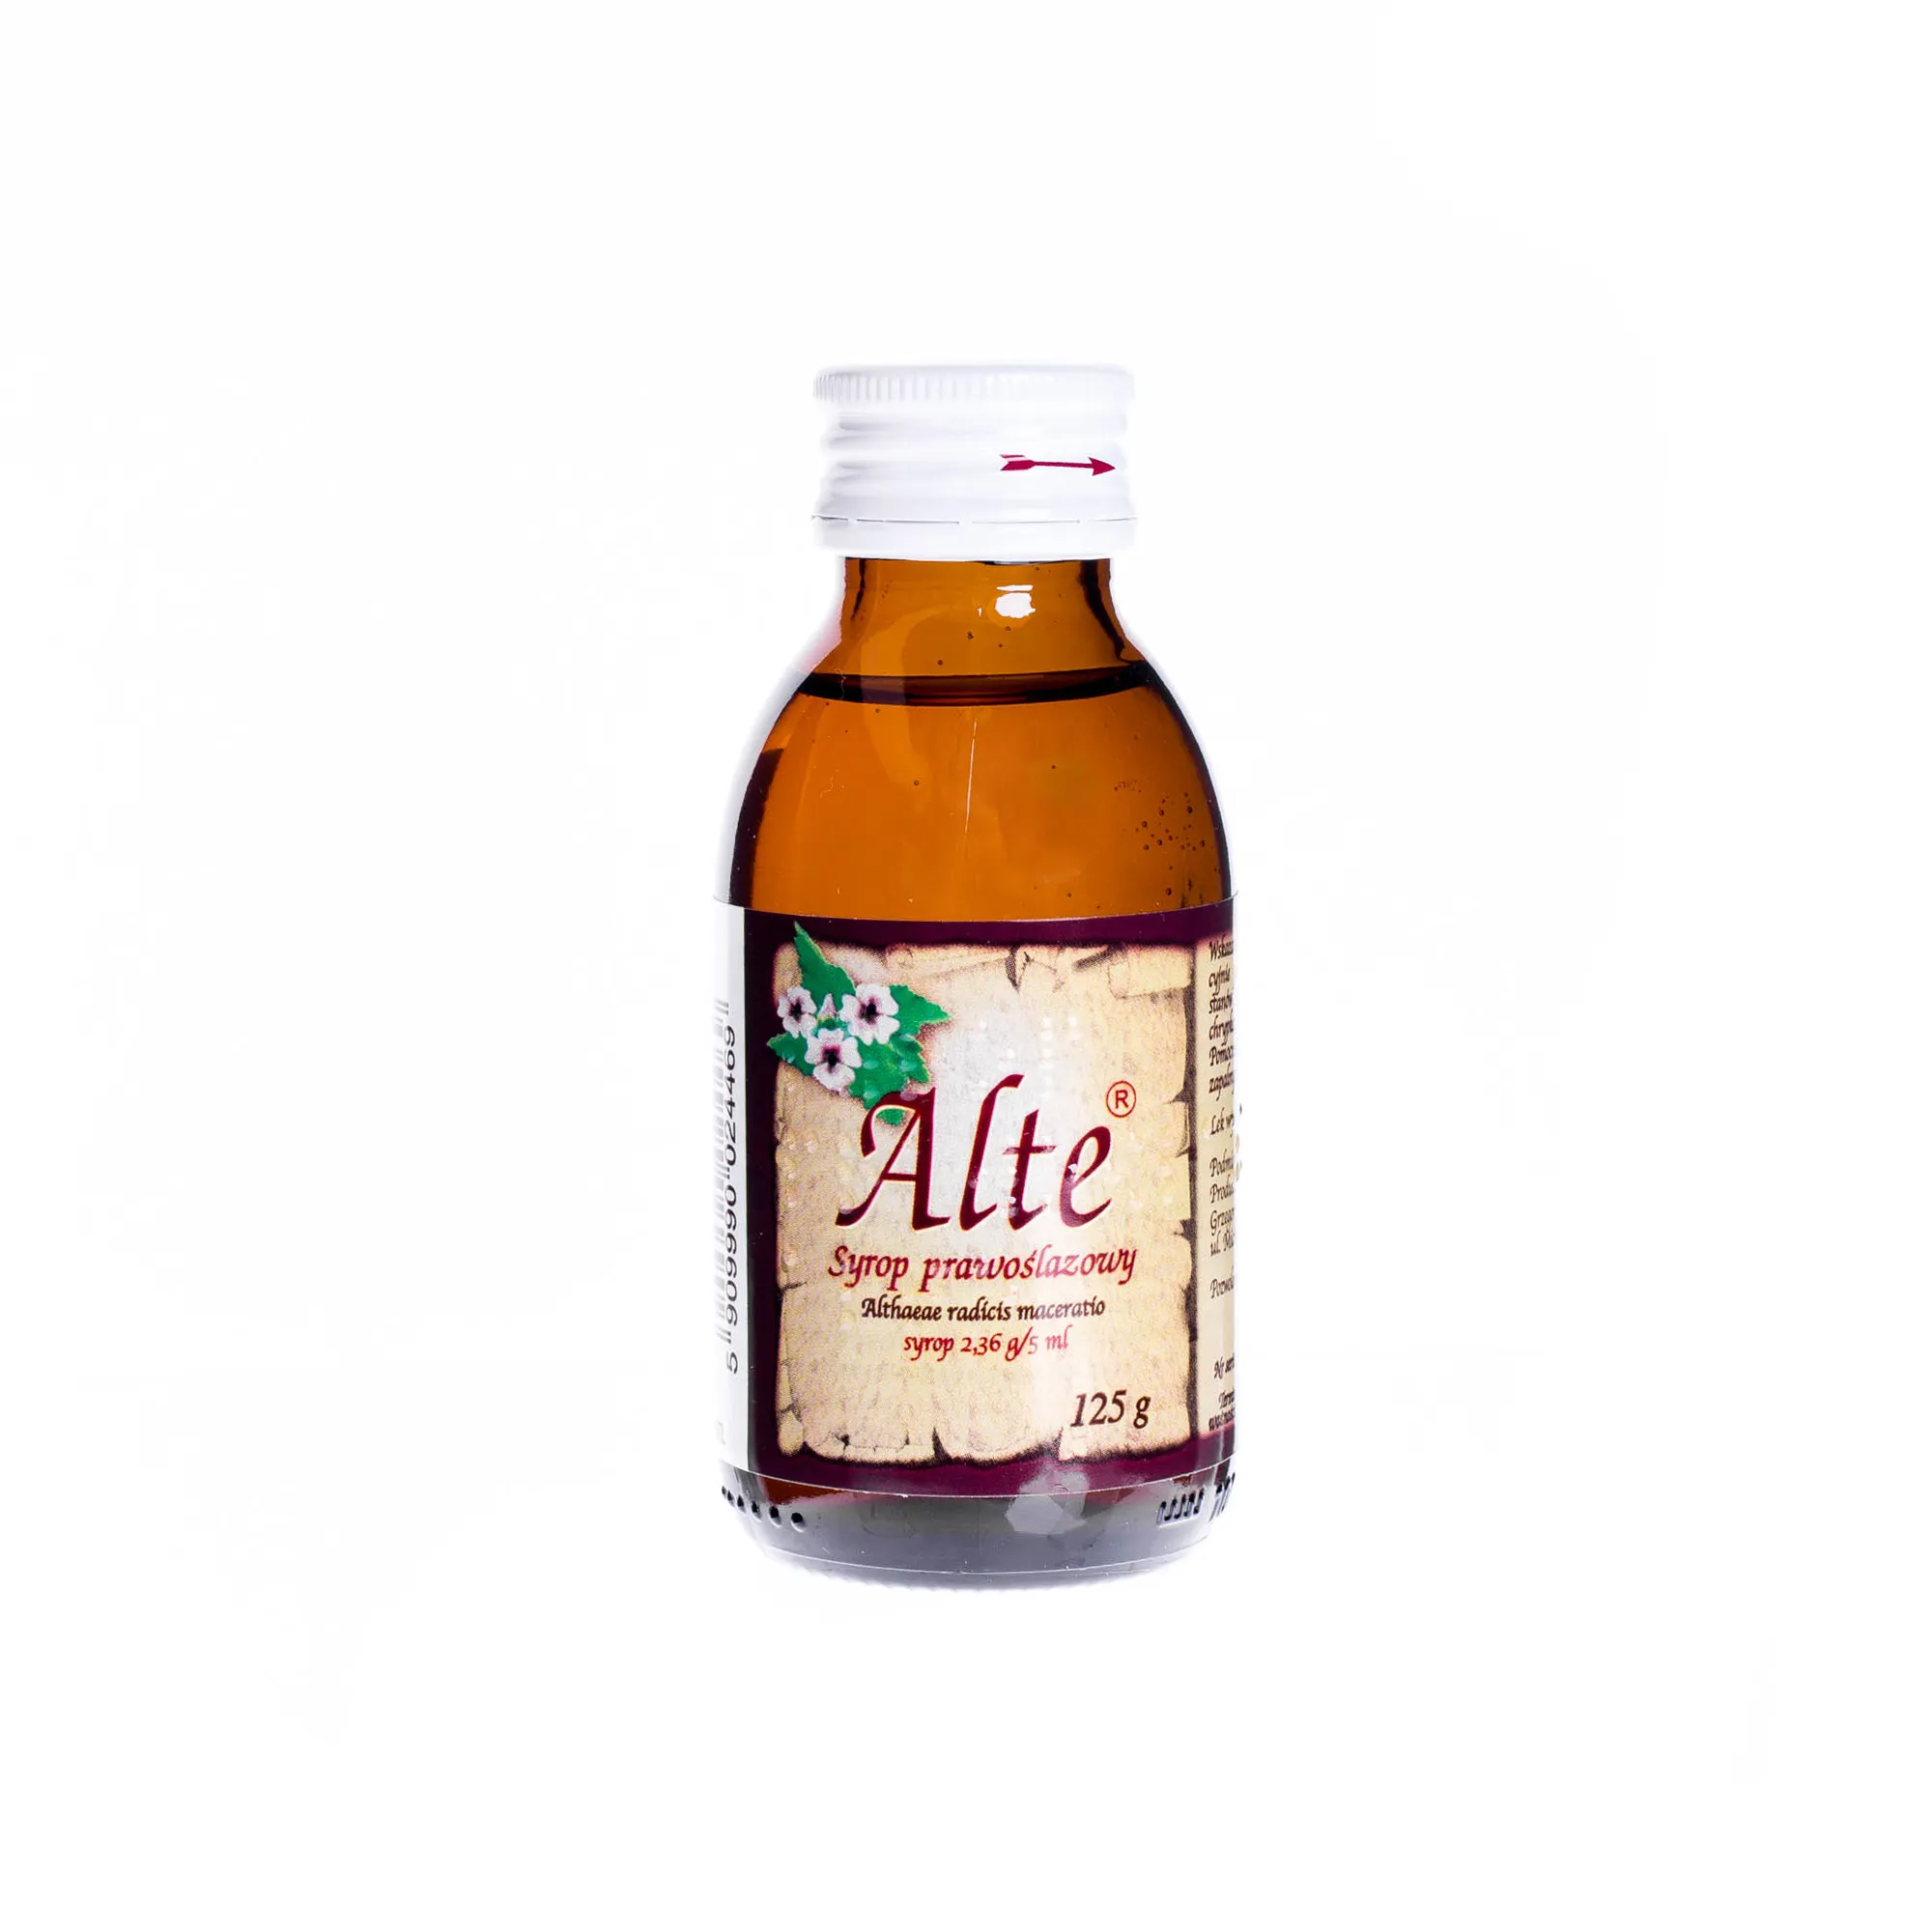 Alte 2,36 g/5 ml- syrop prawoślazowy, 125 g